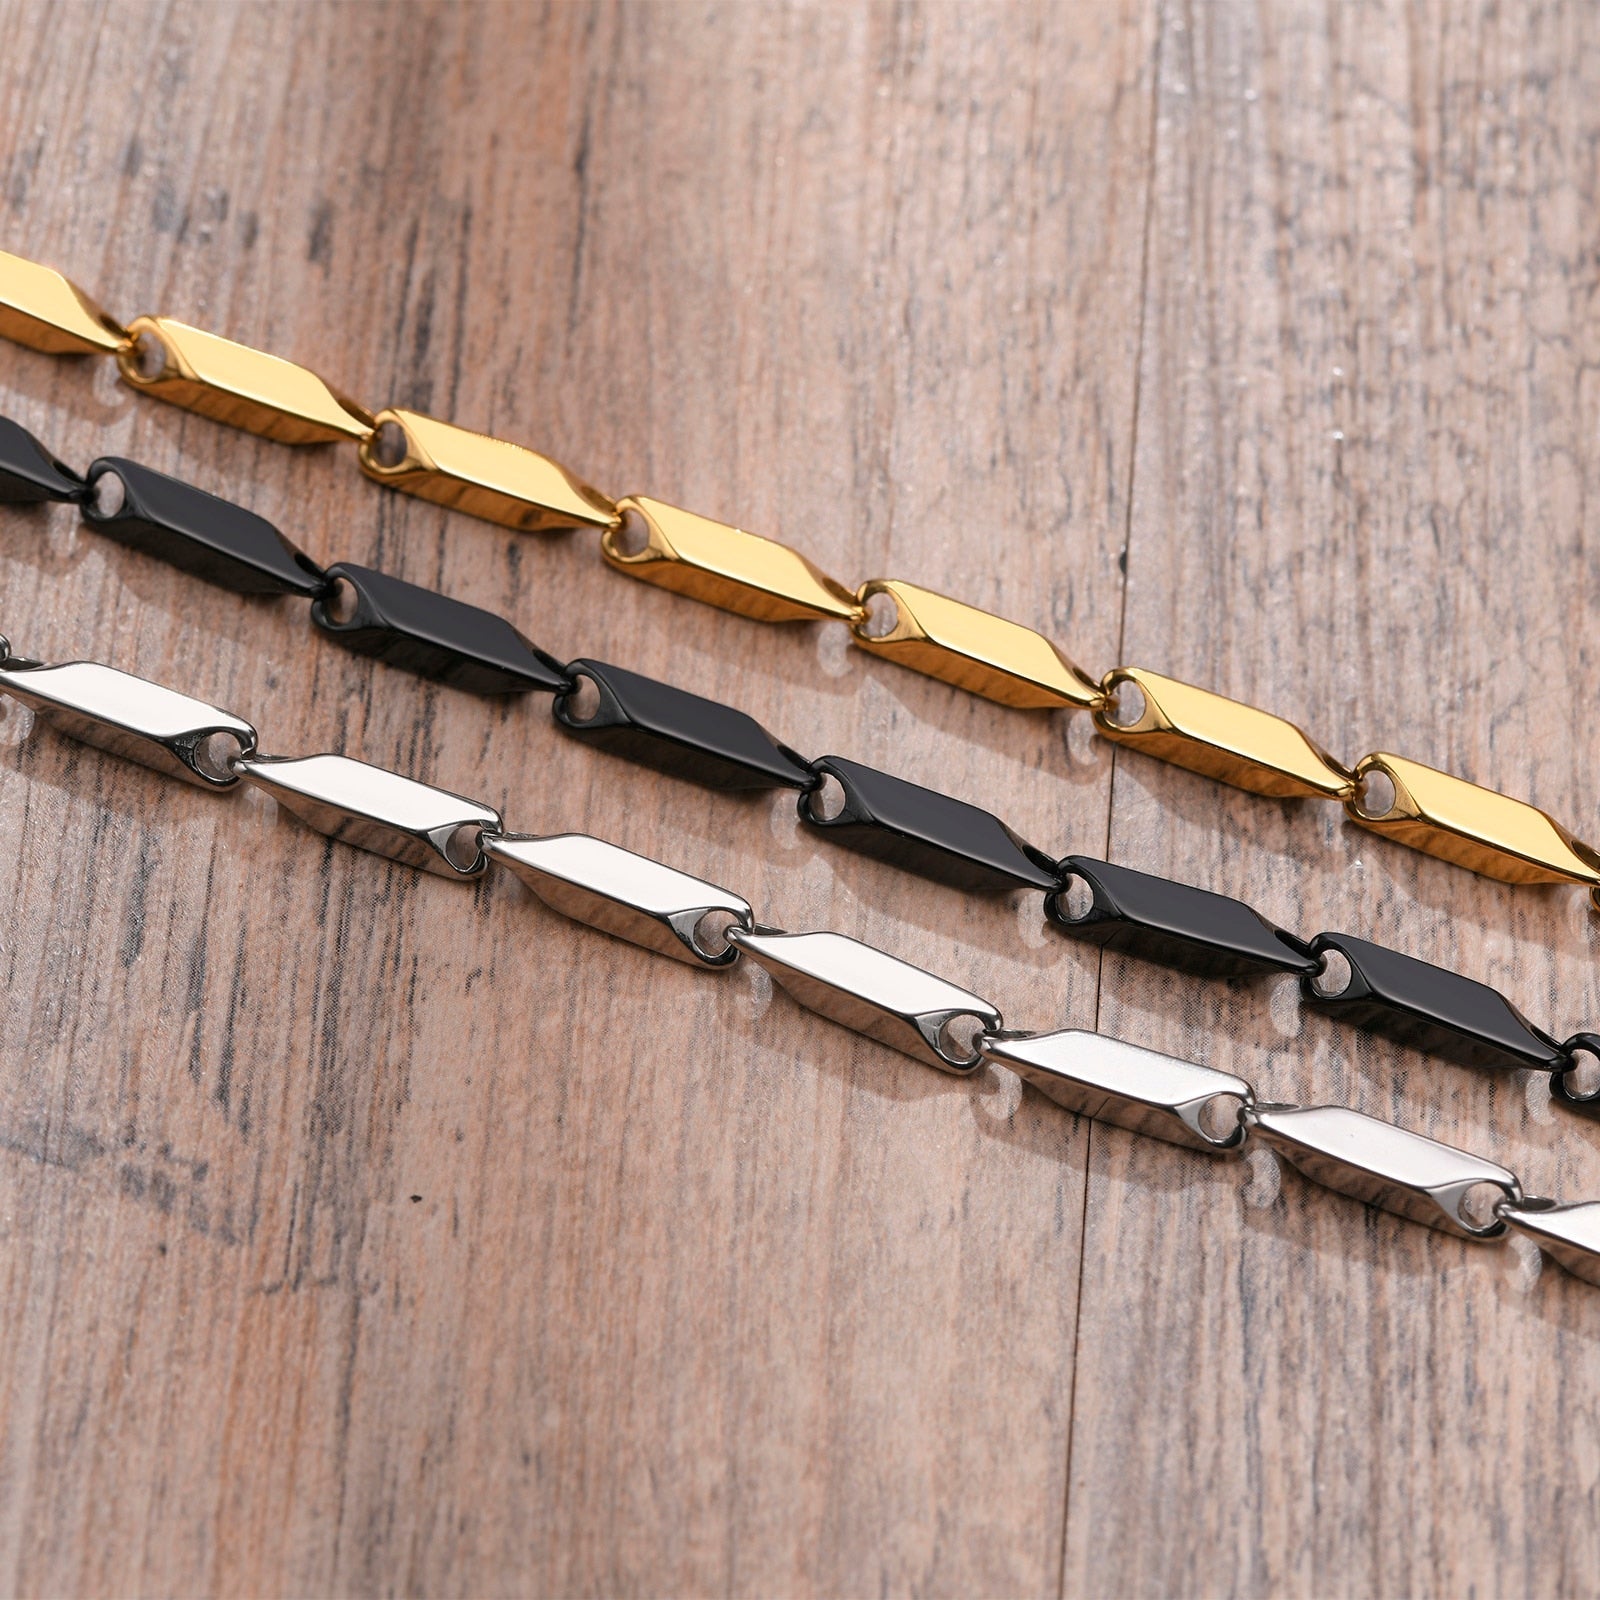 Hunfredo Stainless Steel Bar Link Bracelet